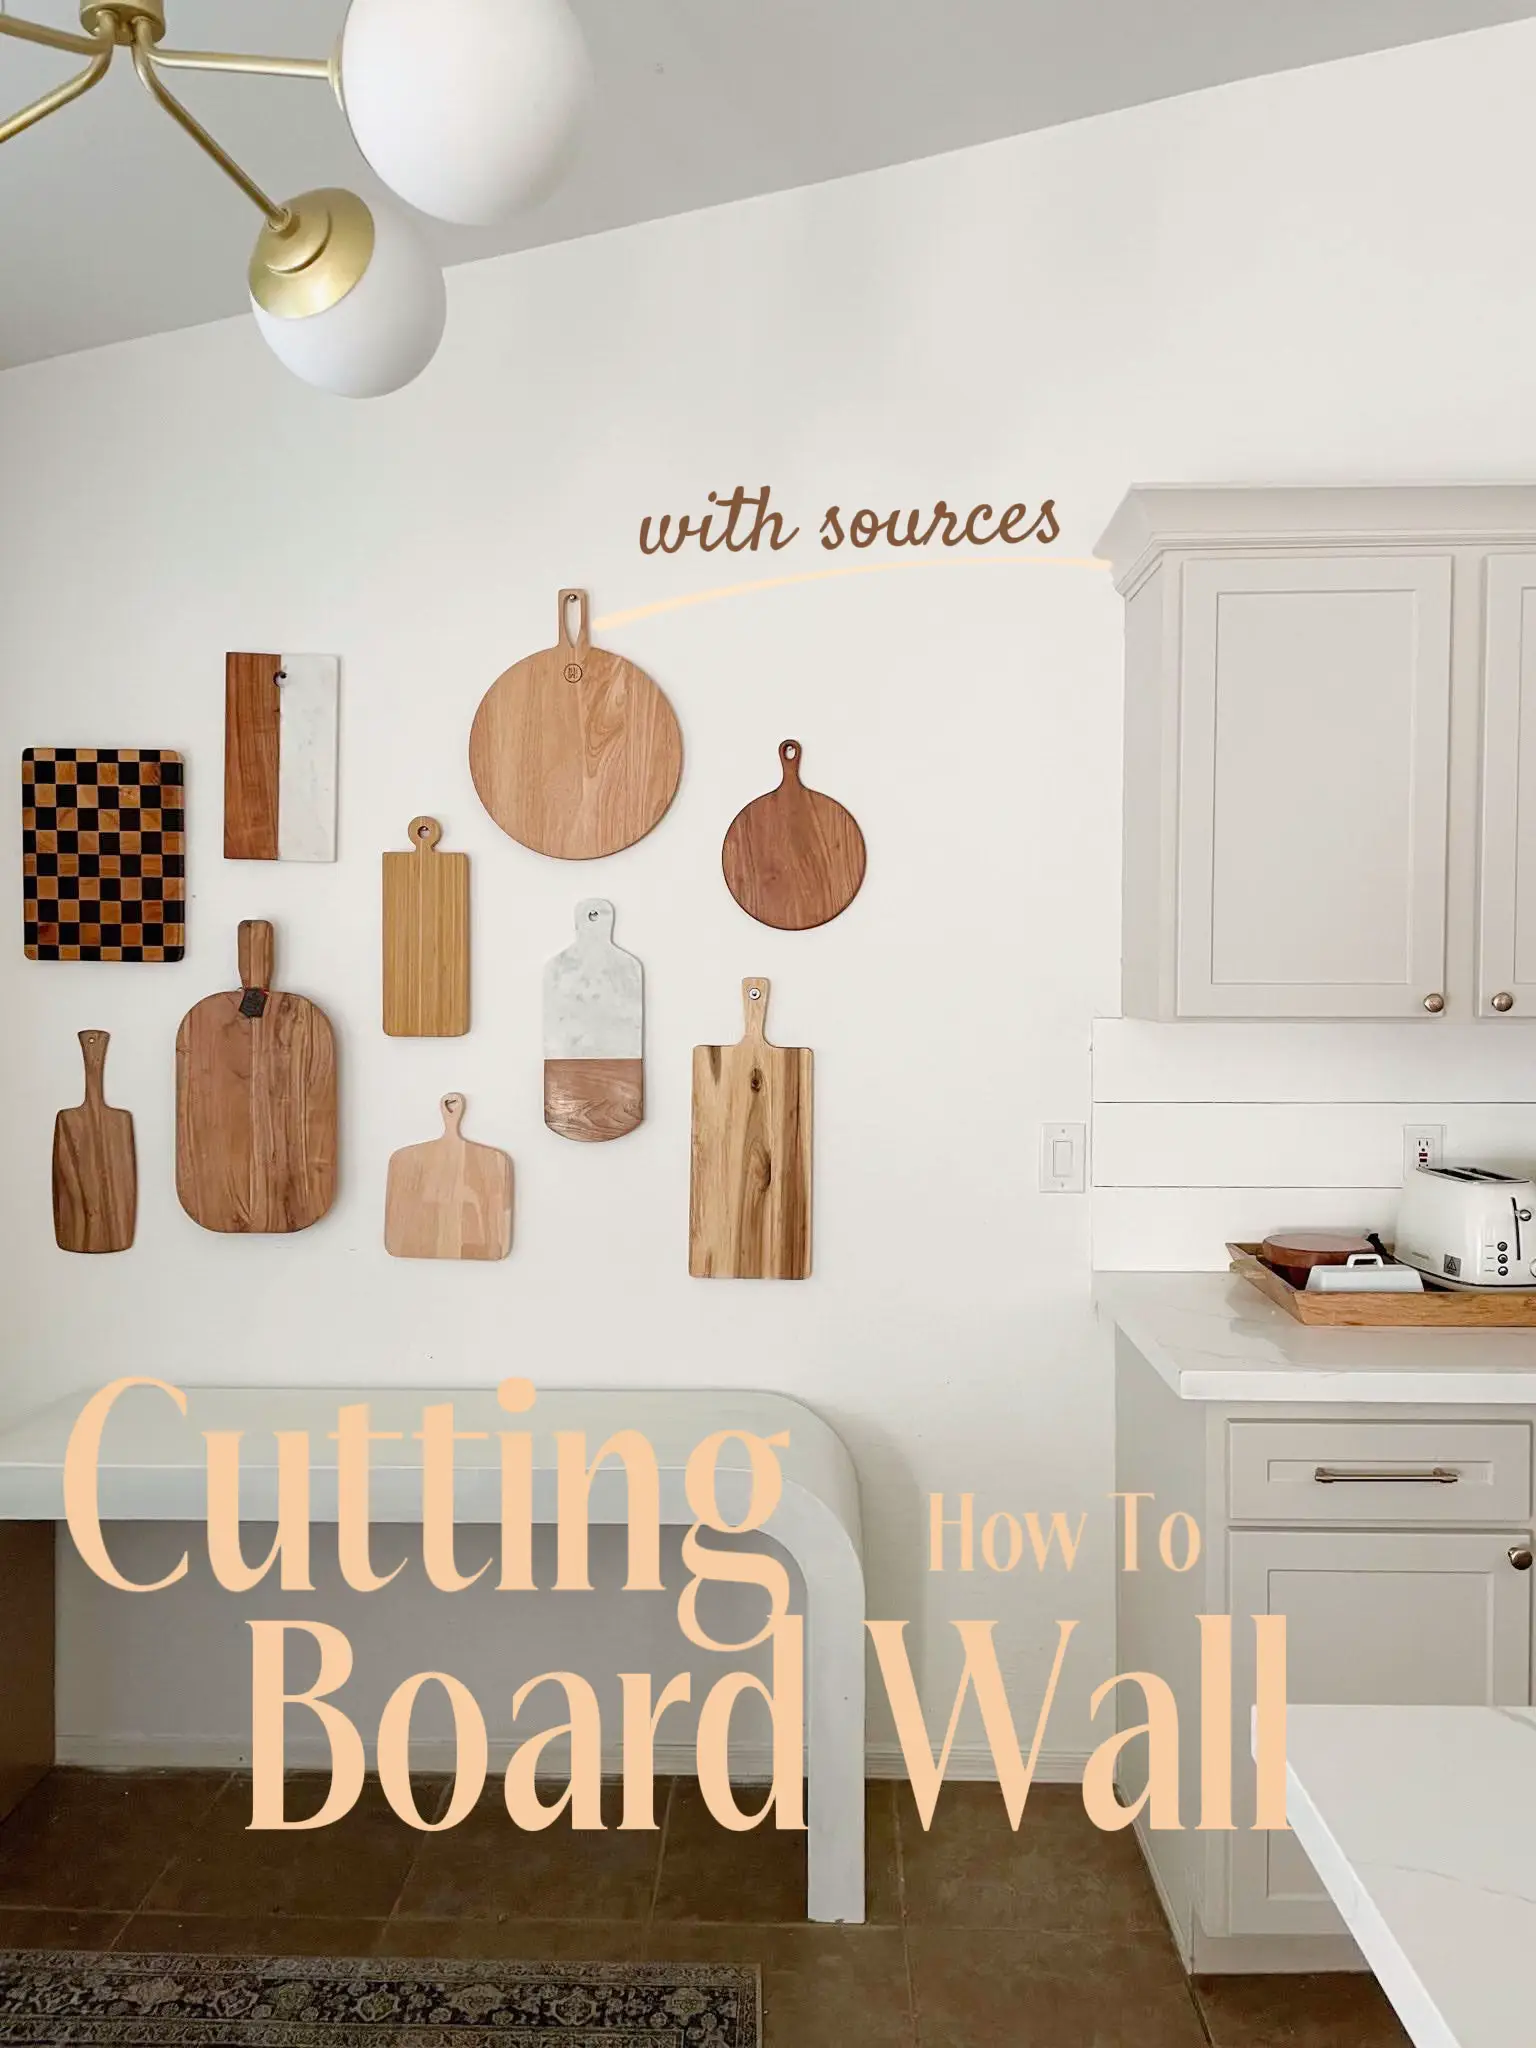 Cutting Board Wall Decor - Sarah Joy